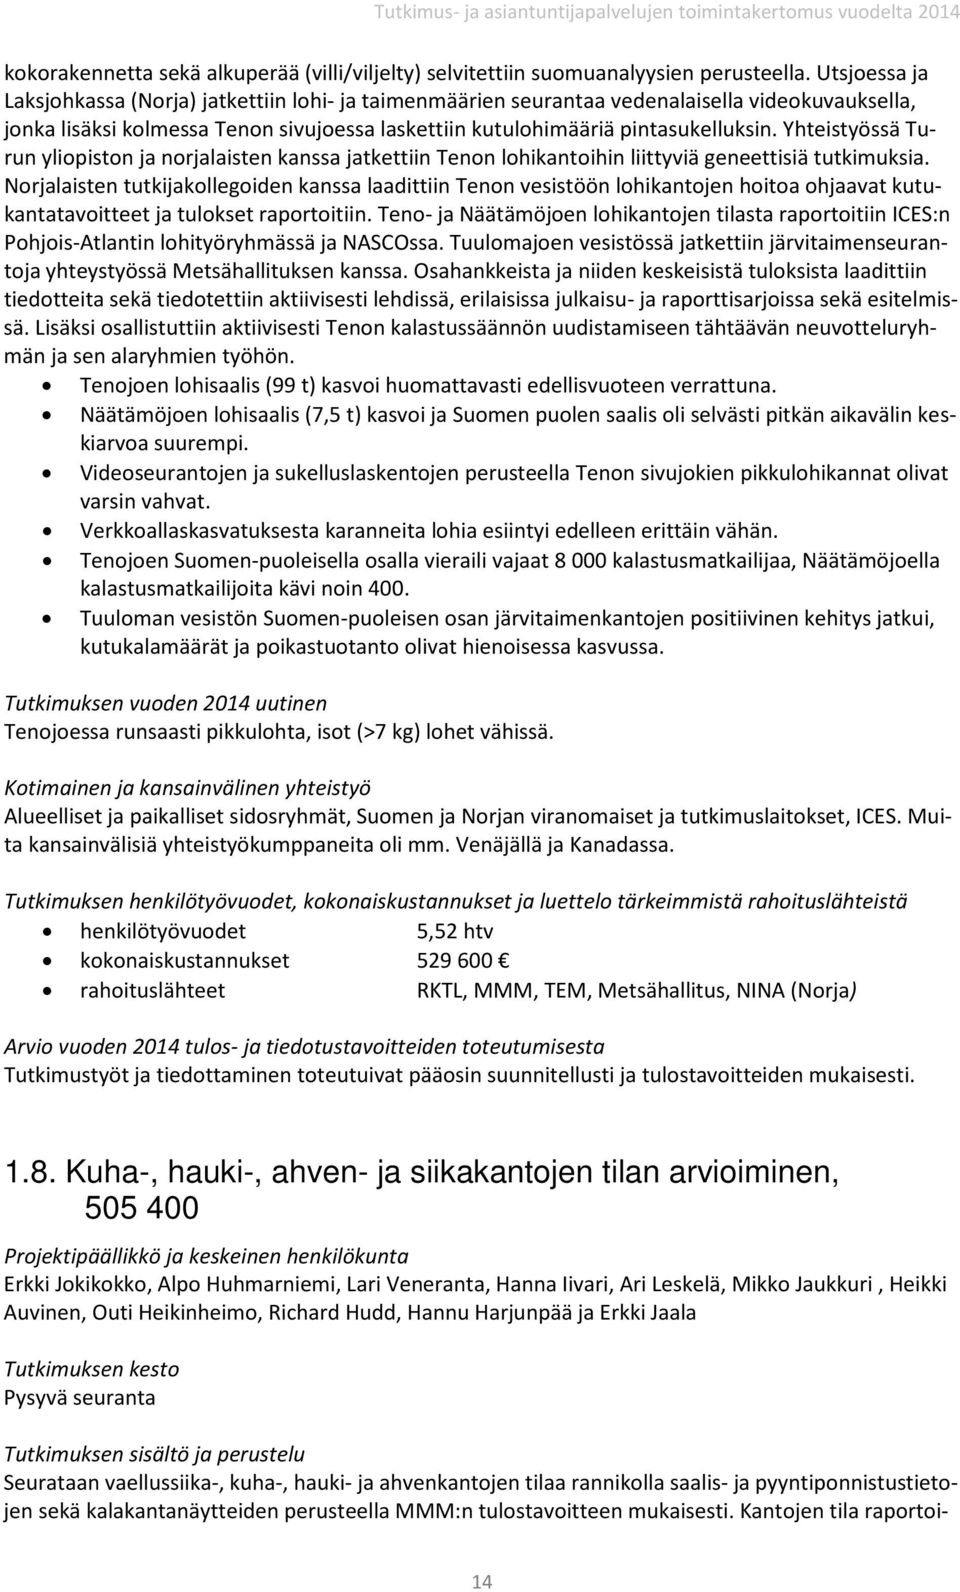 Yhteistyössä Turun yliopiston ja norjalaisten kanssa jatkettiin Tenon lohikantoihin liittyviä geneettisiä tutkimuksia.